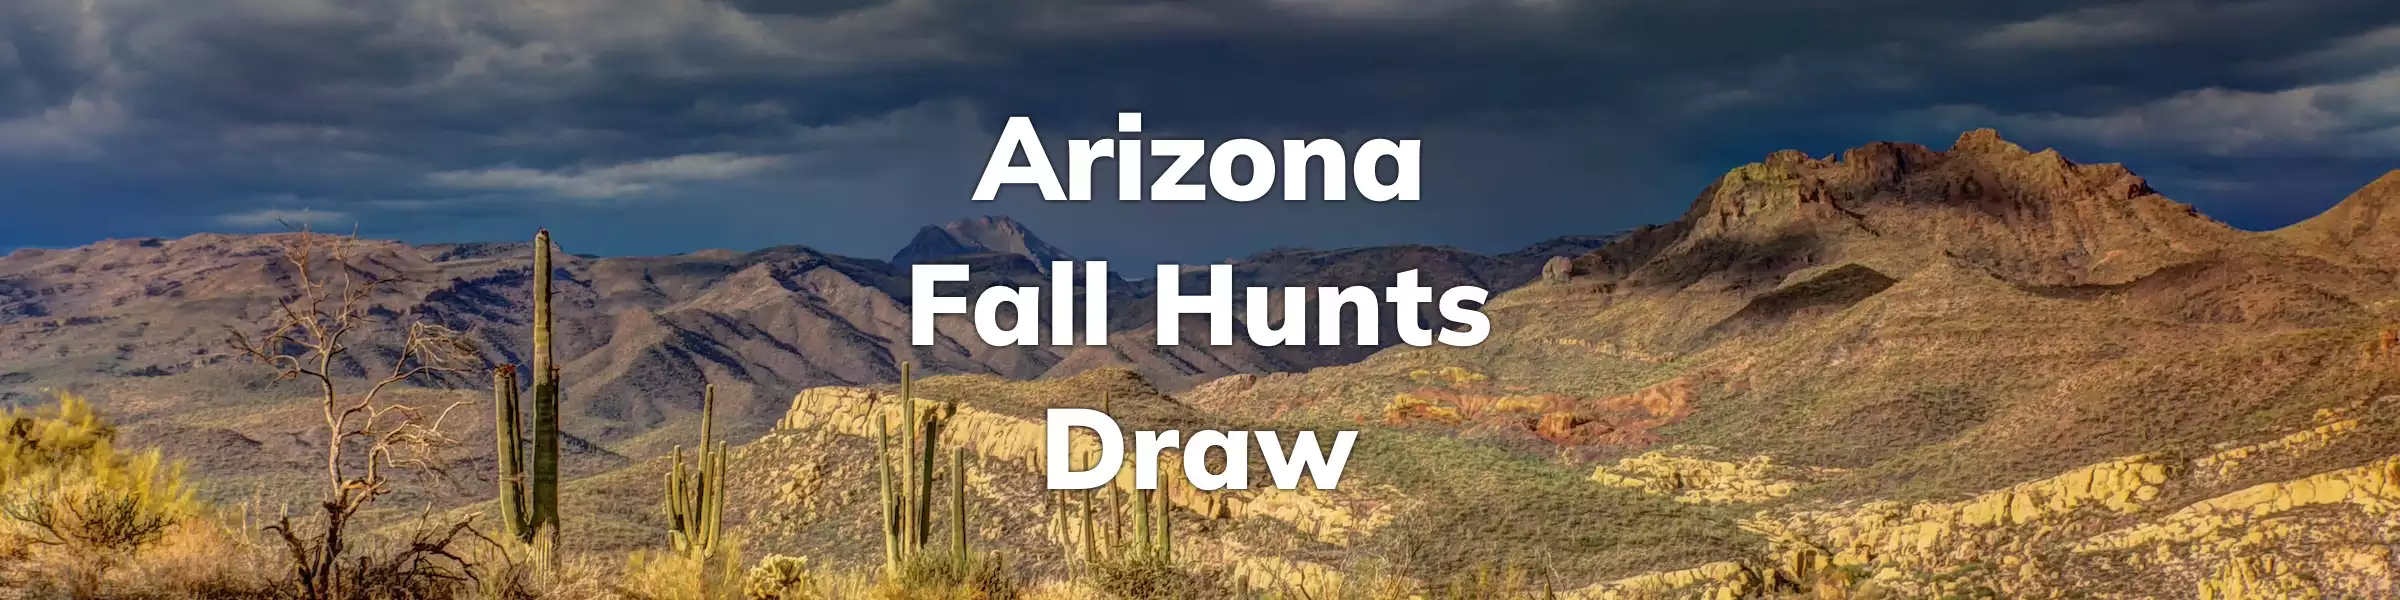 Arizona Fall Hunts Draw